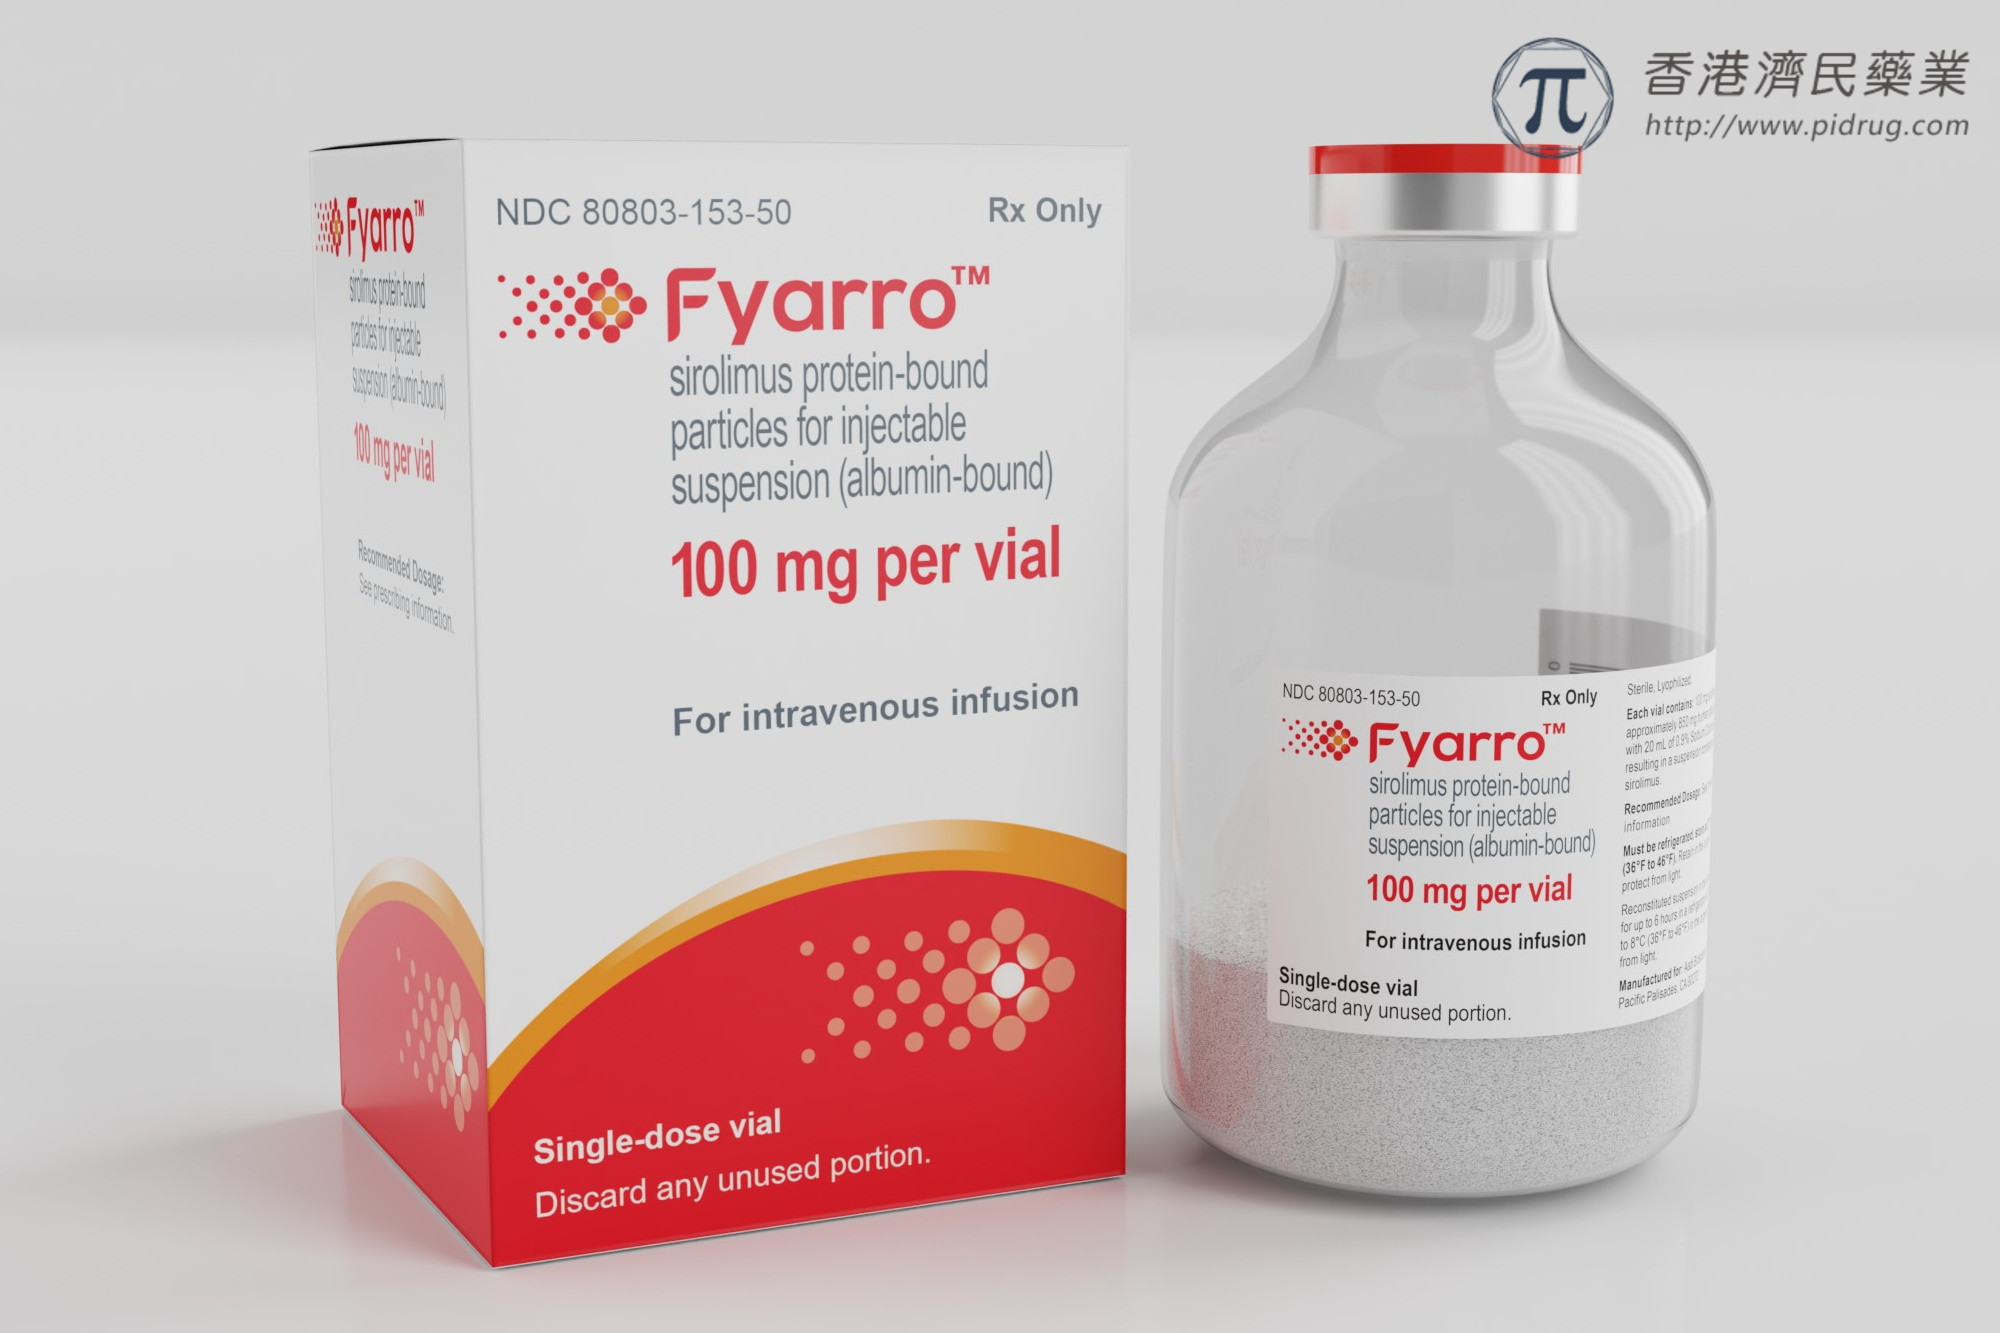 Fyarro(西罗莫司白蛋白结合型纳米颗粒)用于罕见肉瘤疗效、副作用、禁忌_香港济民药业